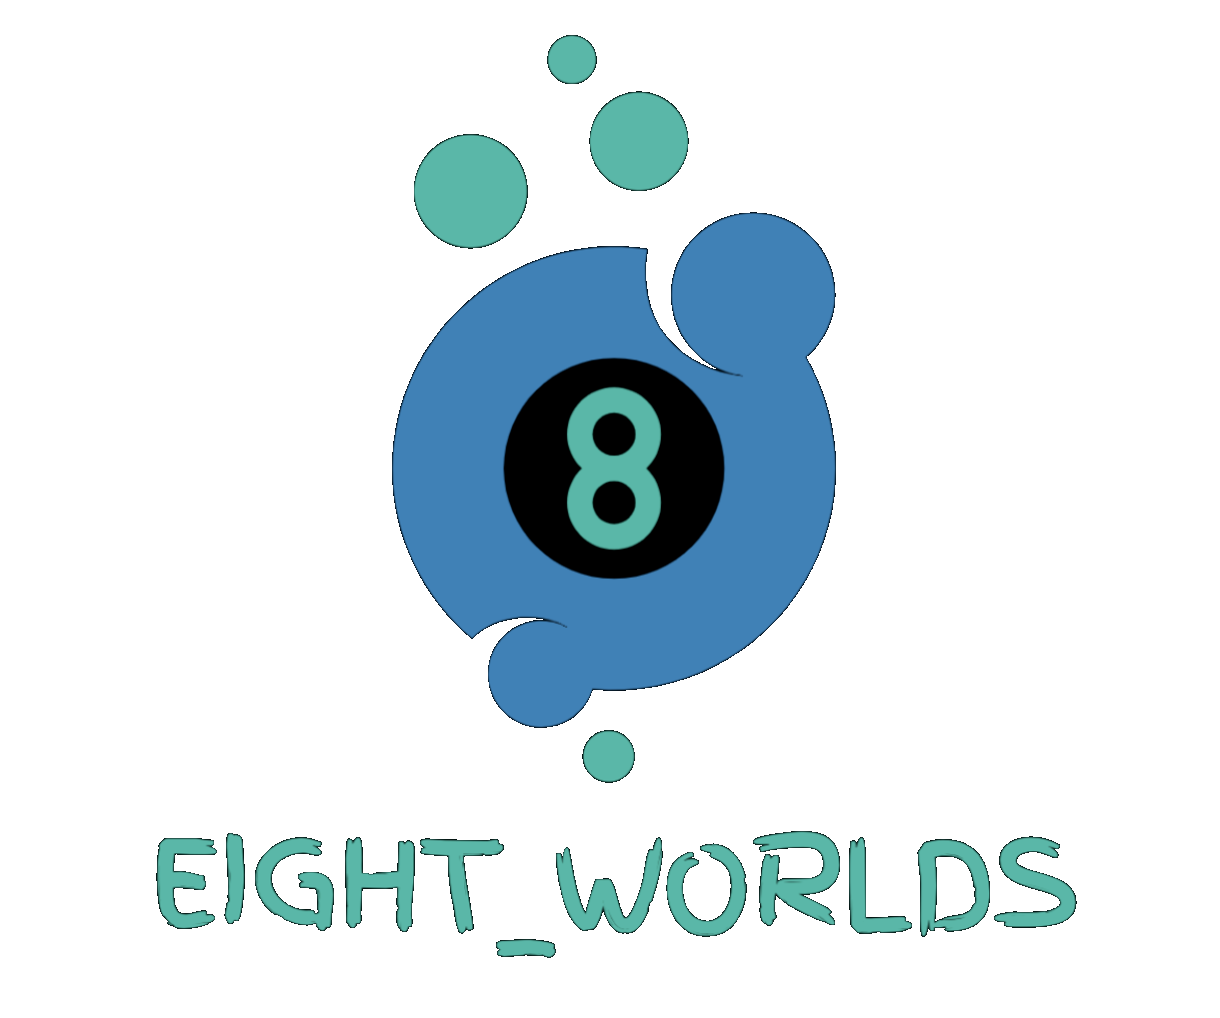 EIGHT WORLDS